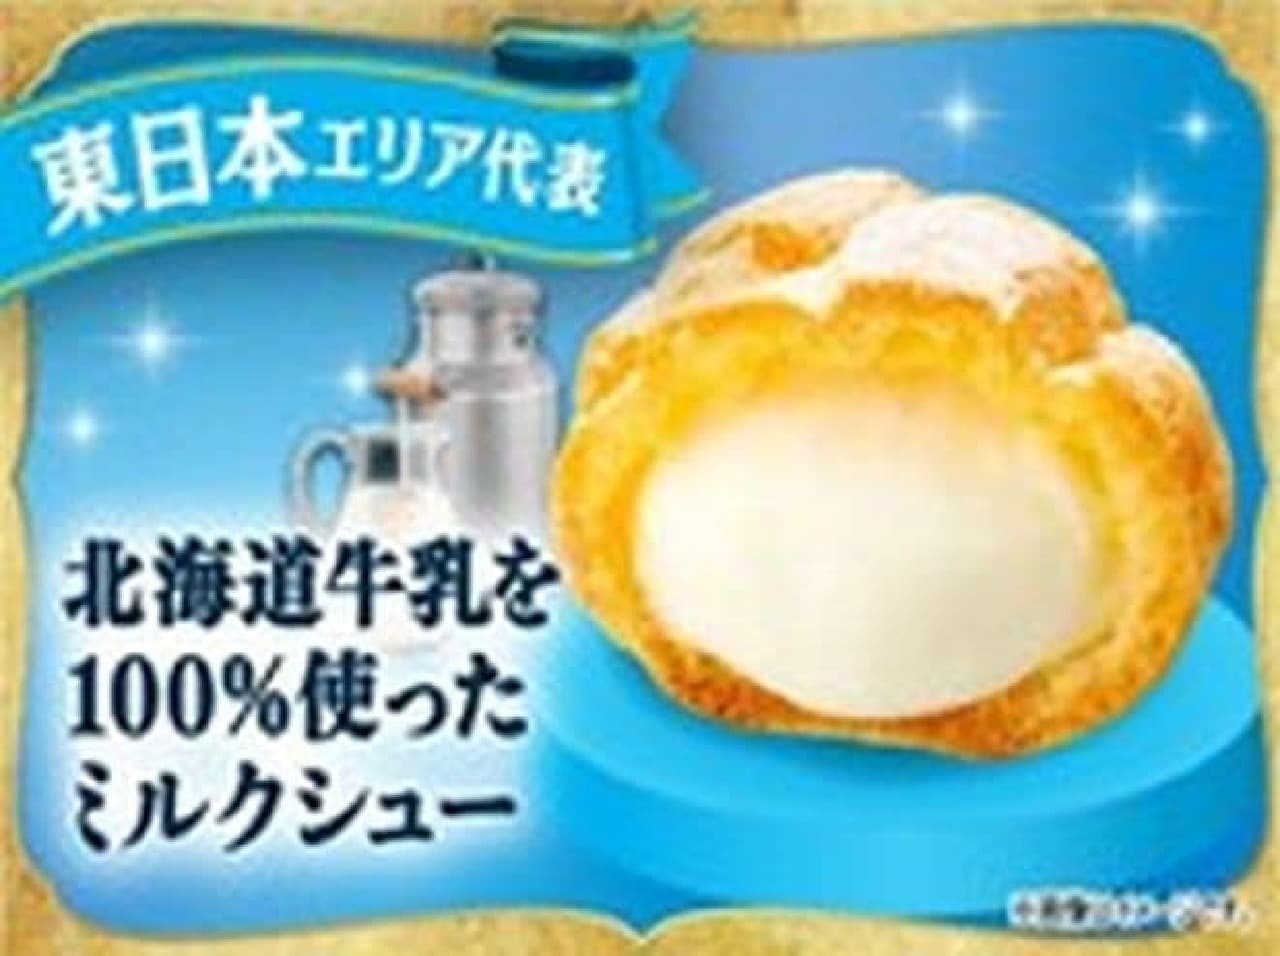 FamilyMart "Milk Puffs made from 100% Hokkaido milk